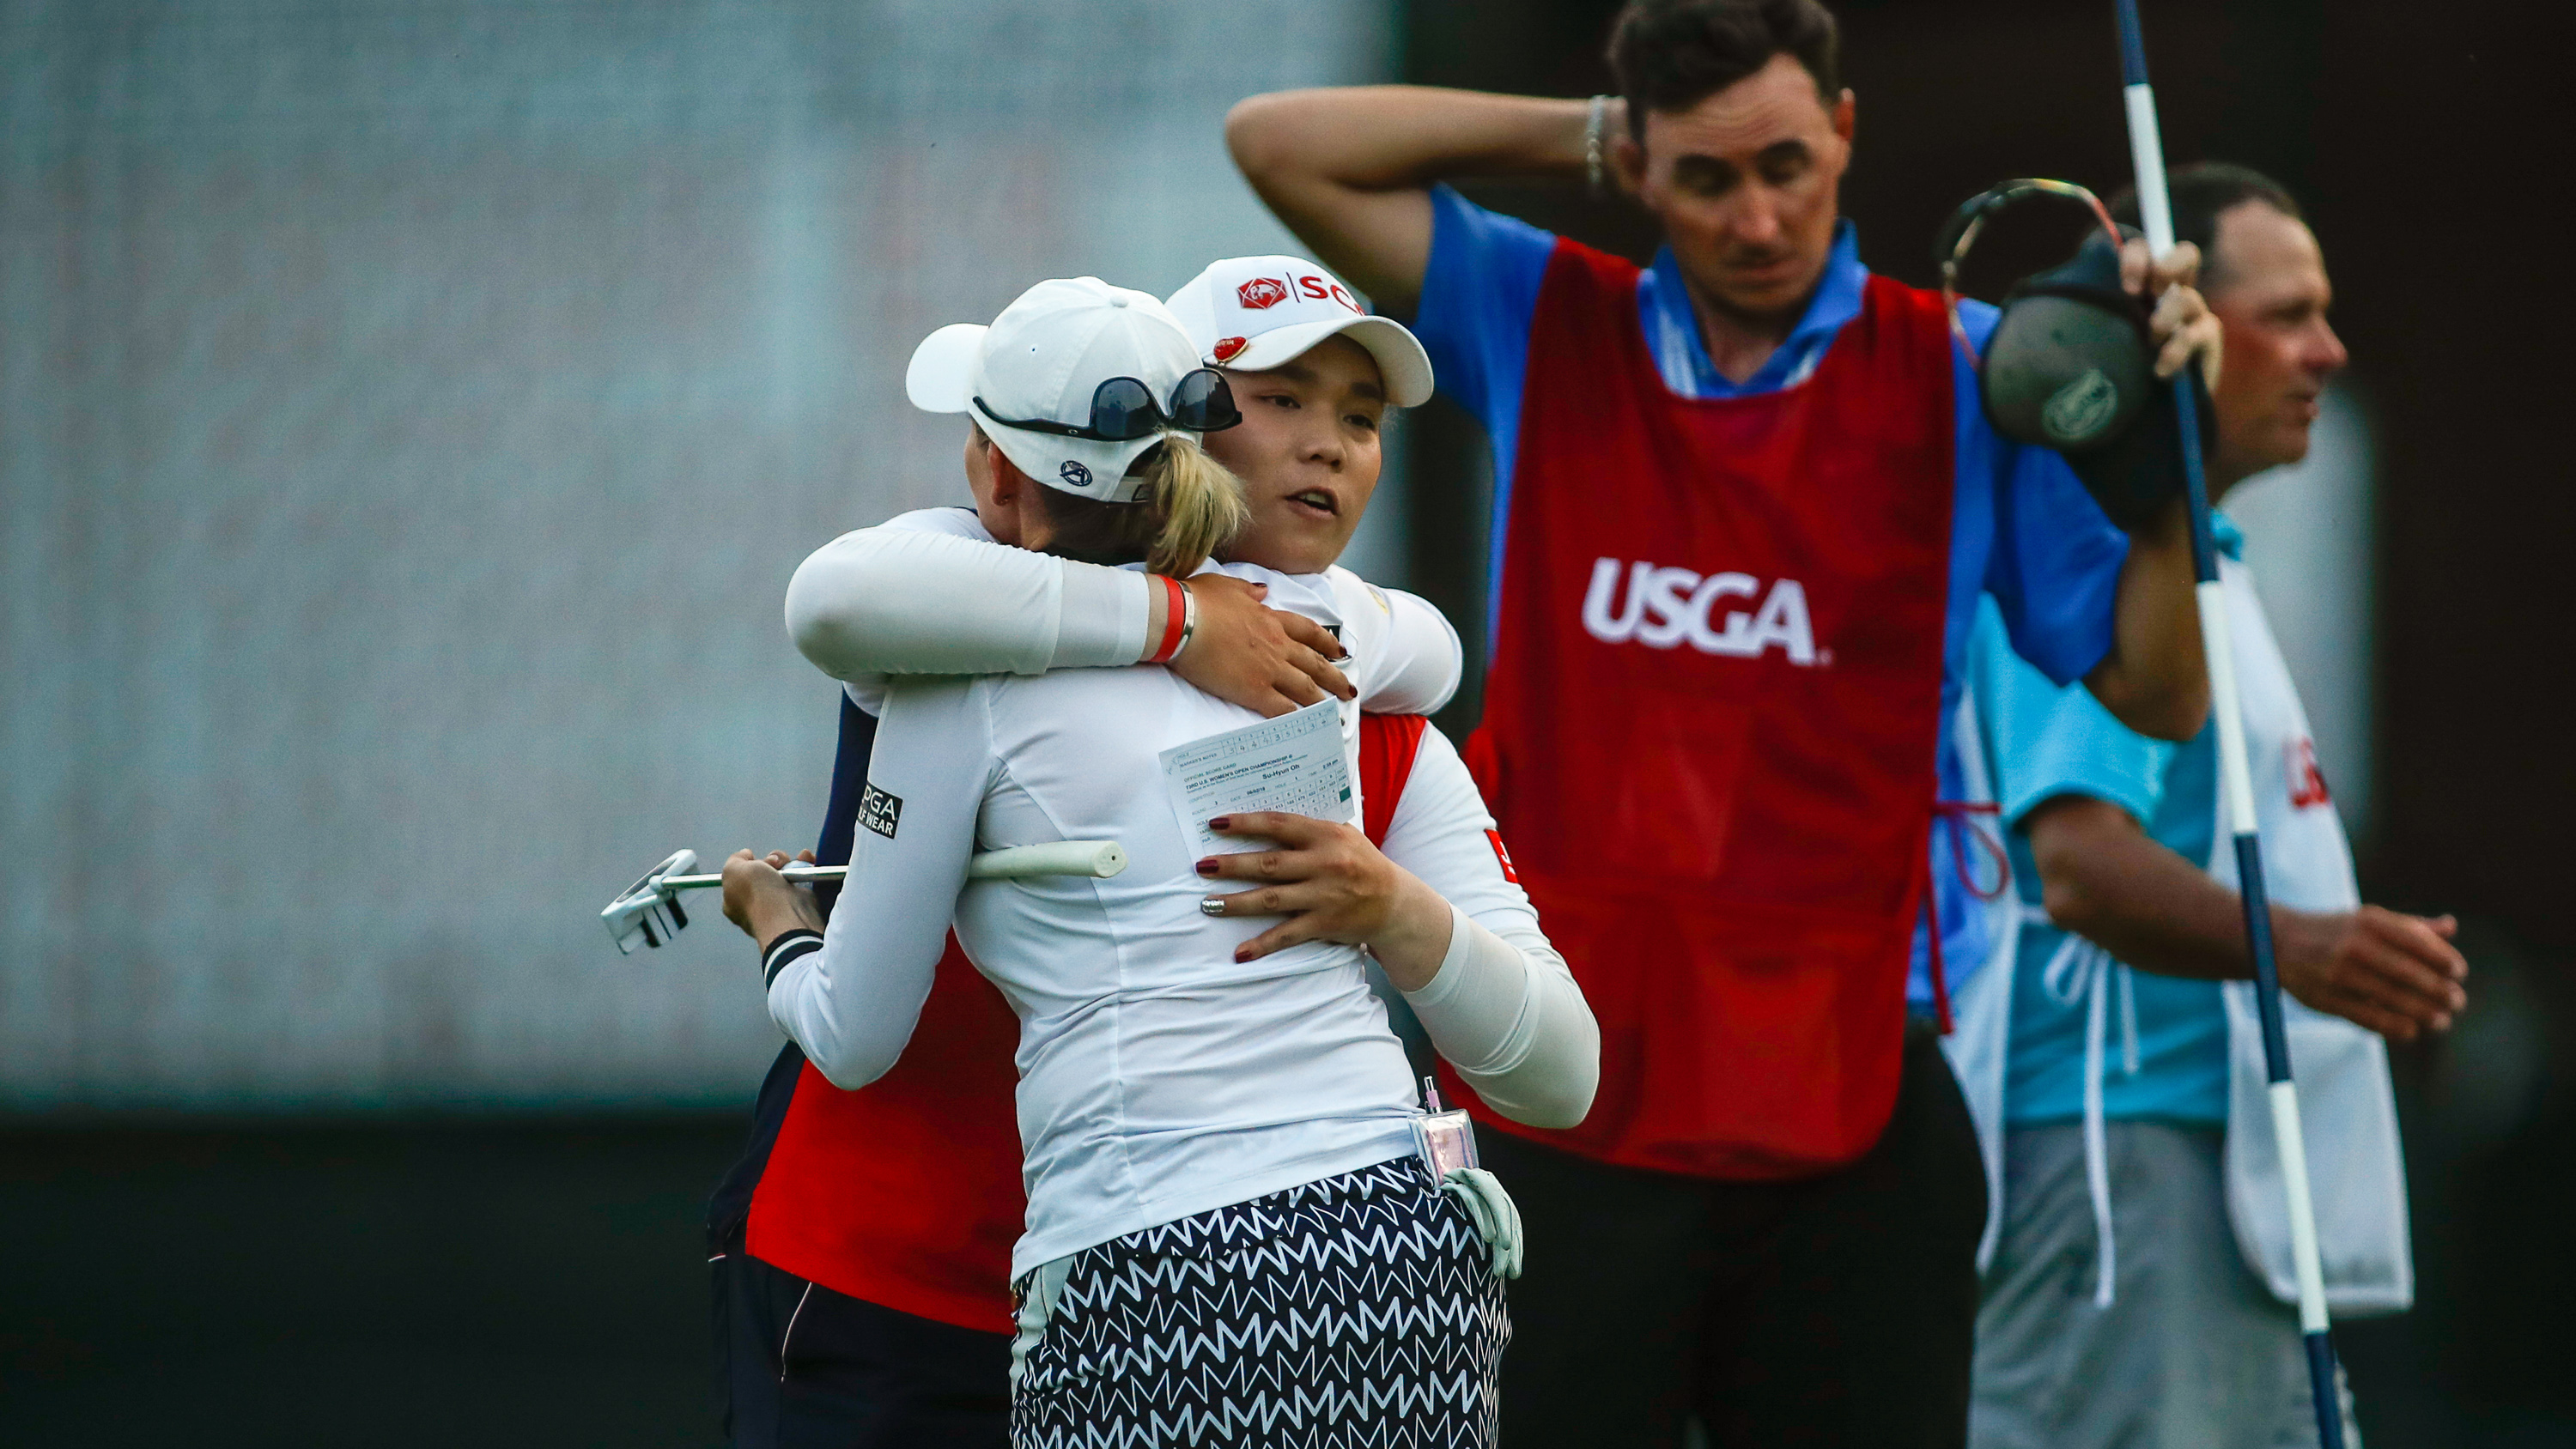 Chùm ảnh: Những hình ảnh nổi bật của ngày thi đấu thứ 3 tại U.S. Women's Open